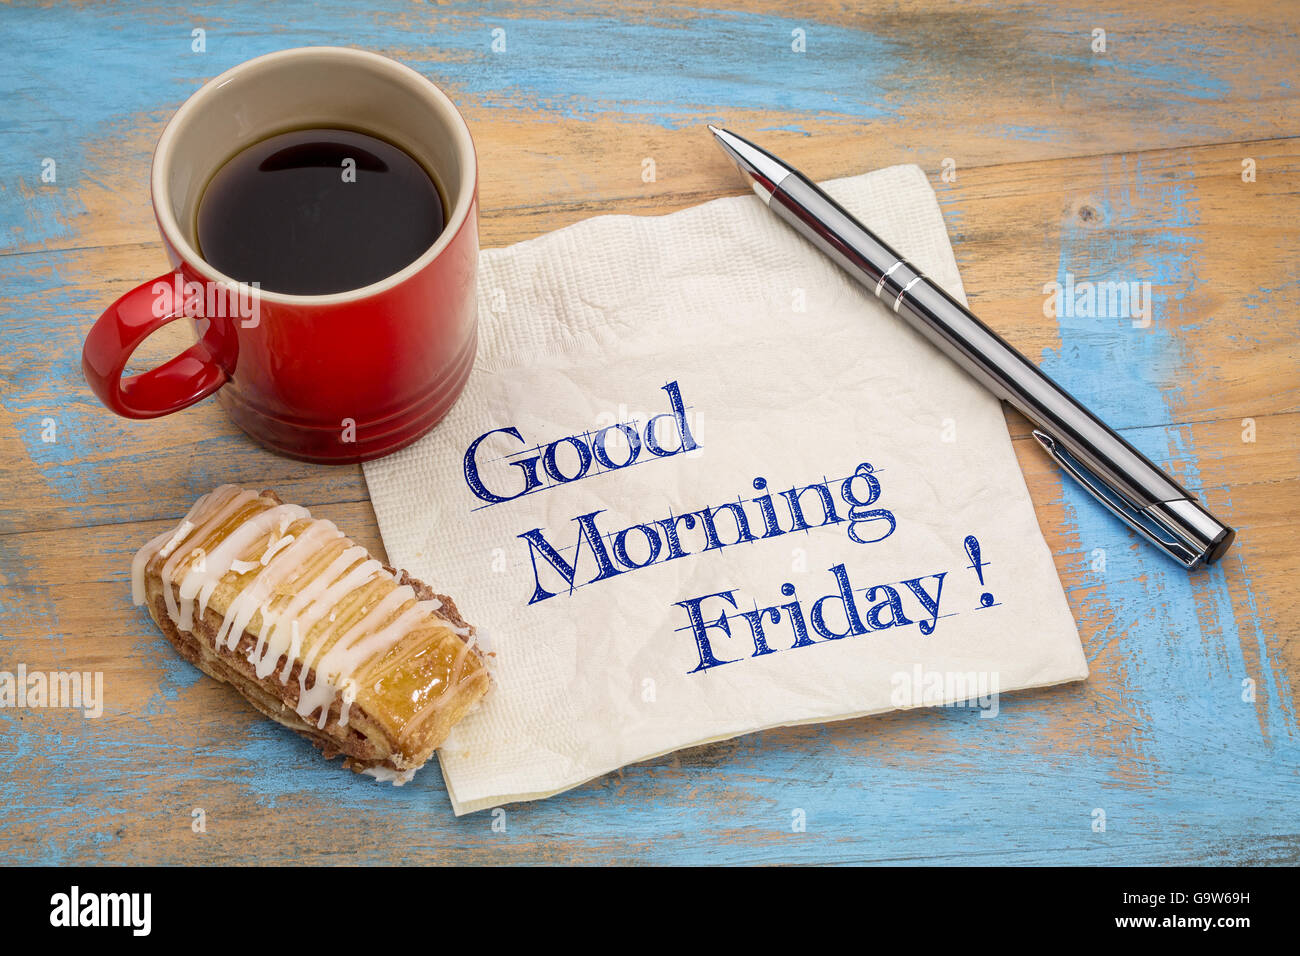 Guten Morgen Freitag - Handschrift auf einer Serviette mit einer Tasse Kaffee und Cookies Stockfoto